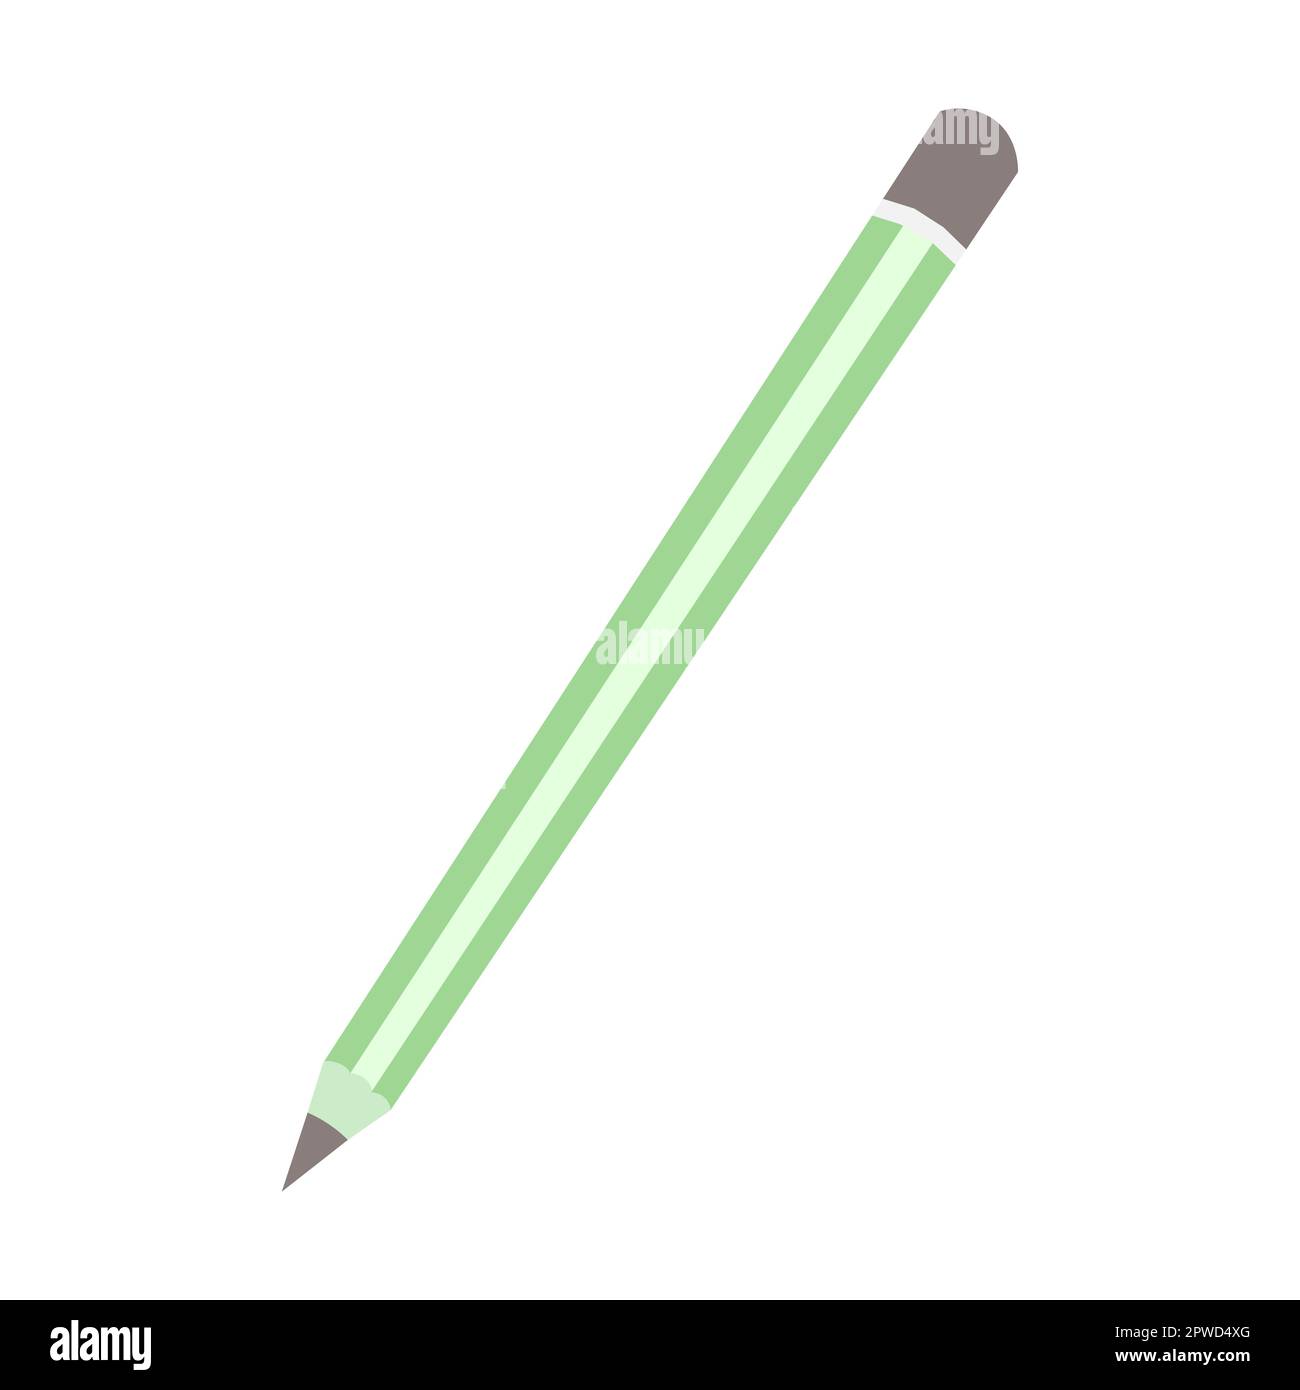 Soporte de escritorio con lápices de colores para dibujar, dibujar.  ilustración vectorial, estilo de dibujos animados.